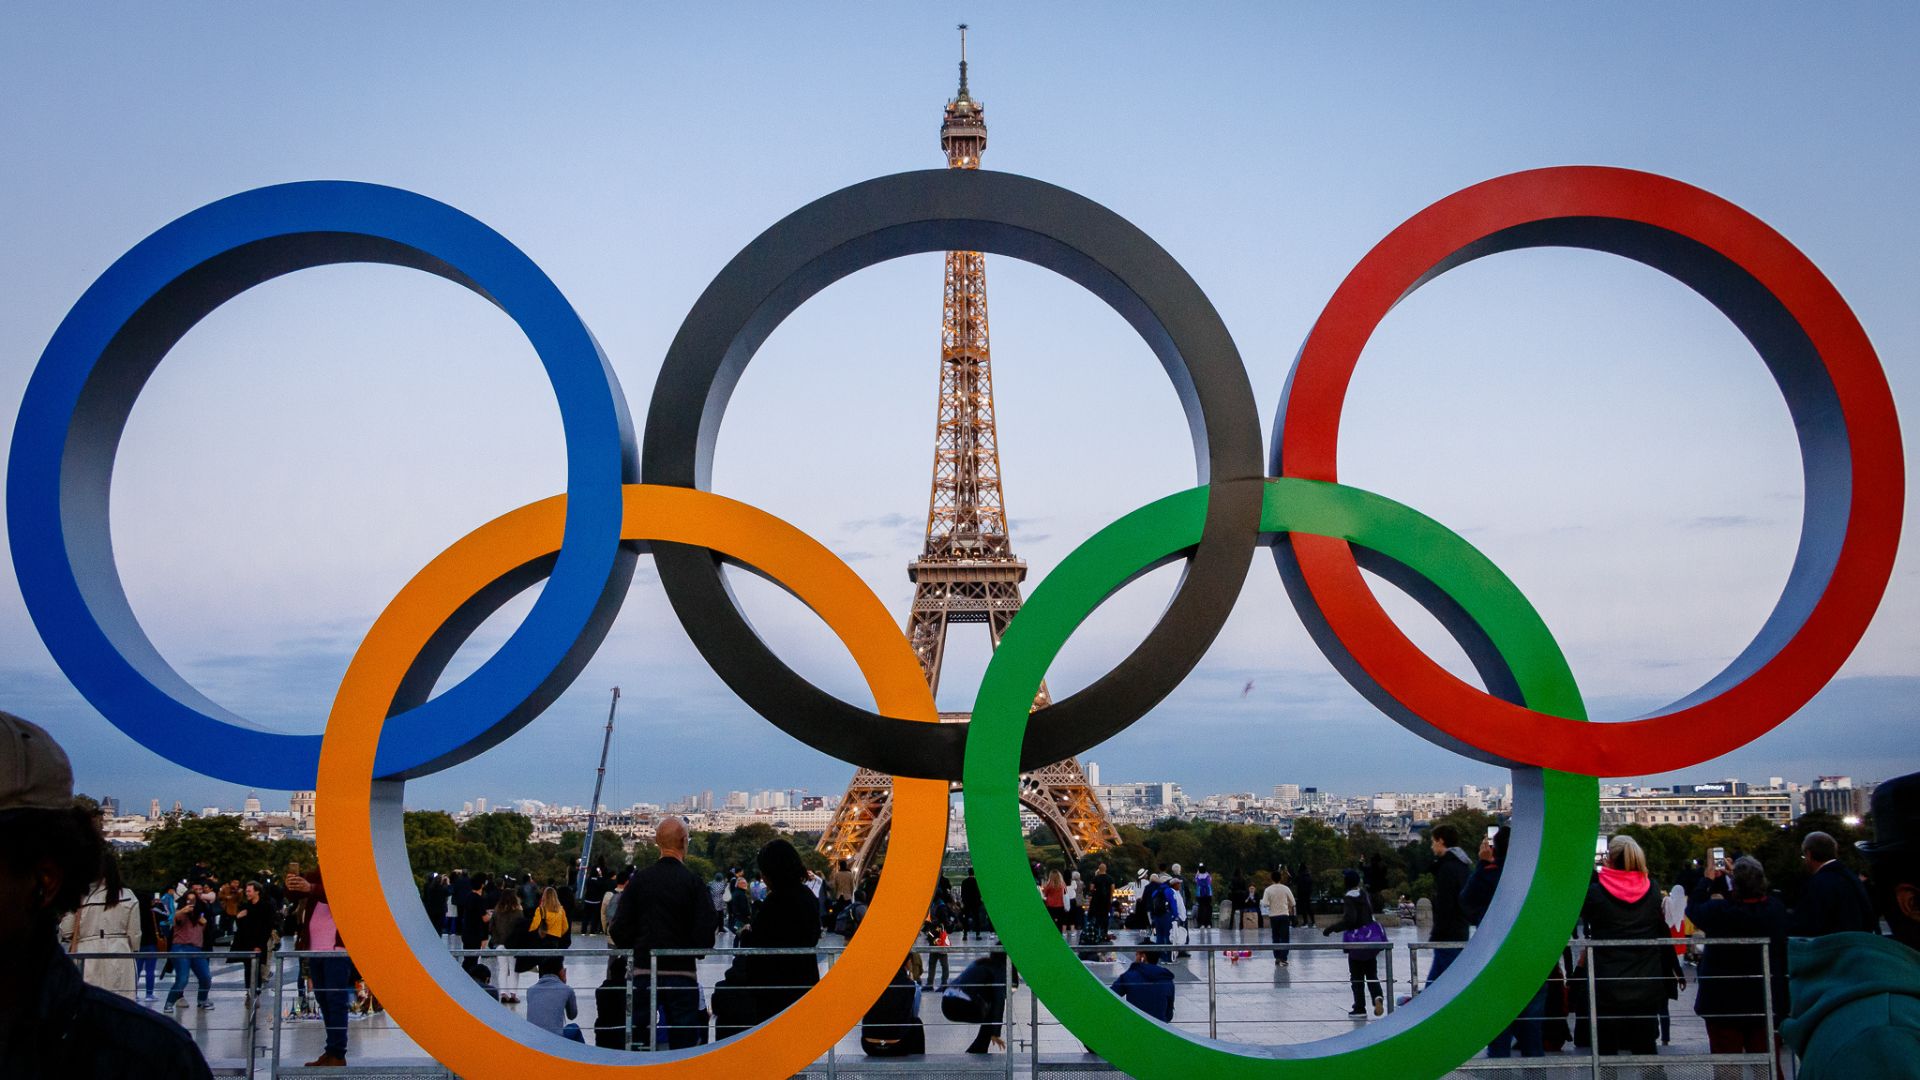 Olimpíada de Paris terá cerimônia de abertura com 10 mil atletas no rio Sena